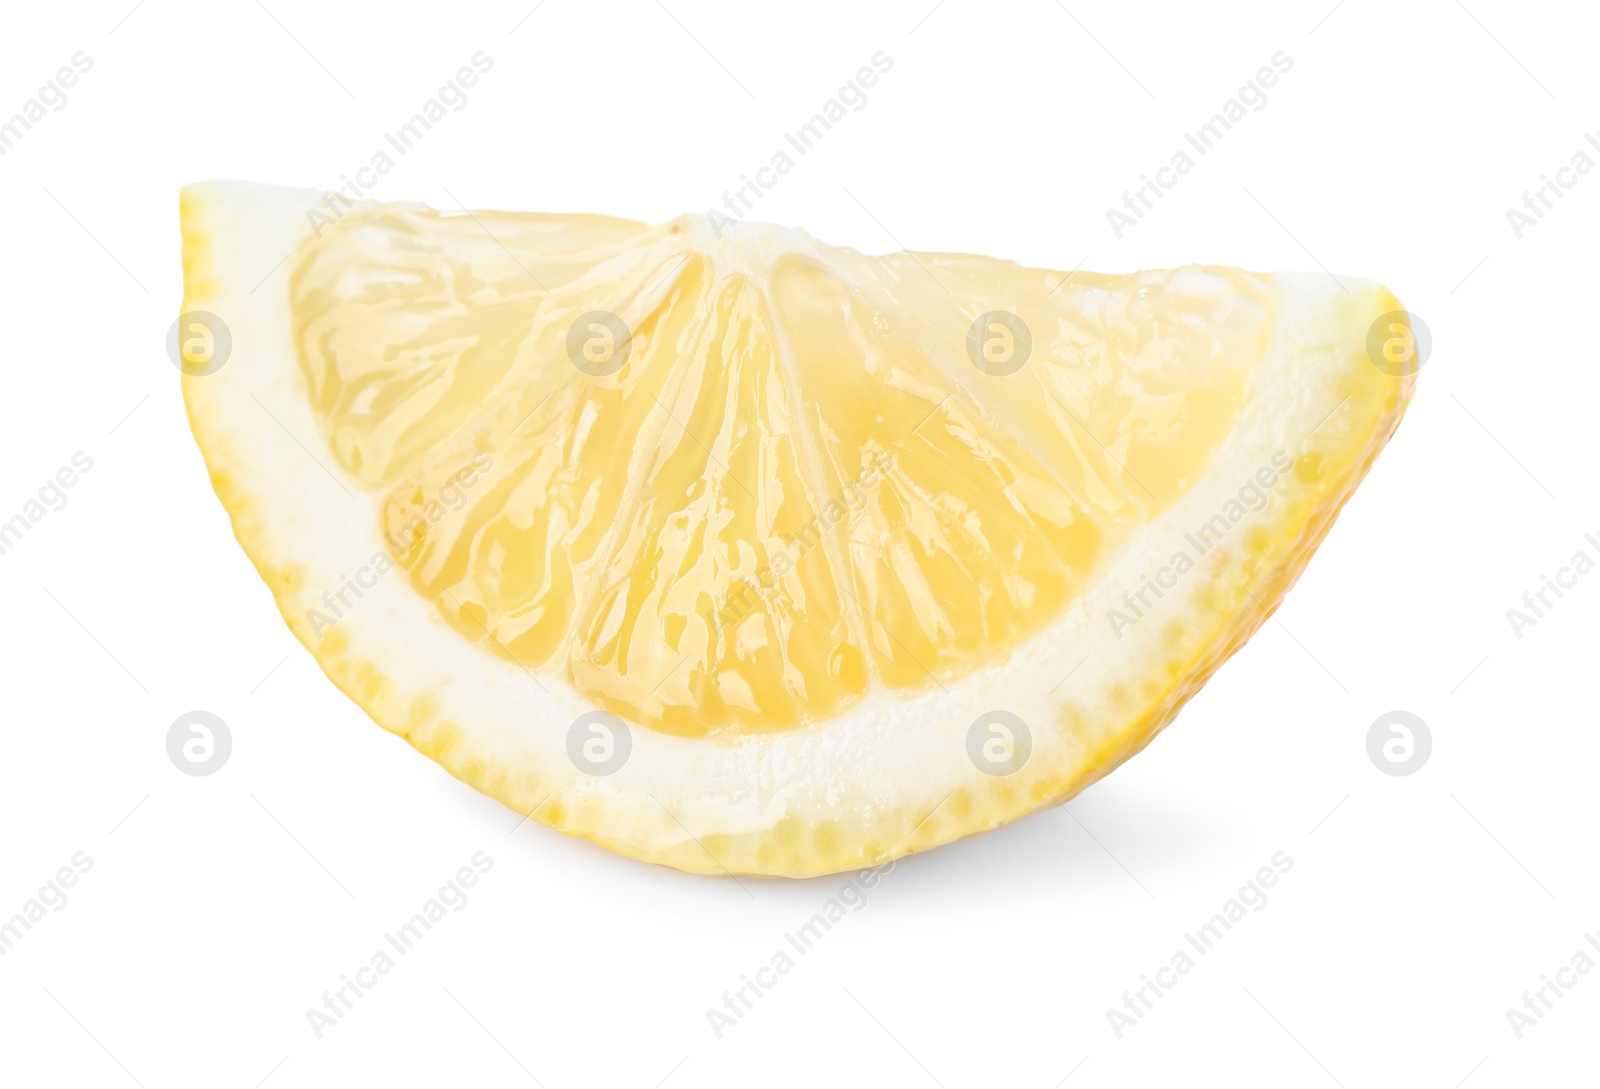 Photo of Lemon wedge isolated on white. Citrus fruit